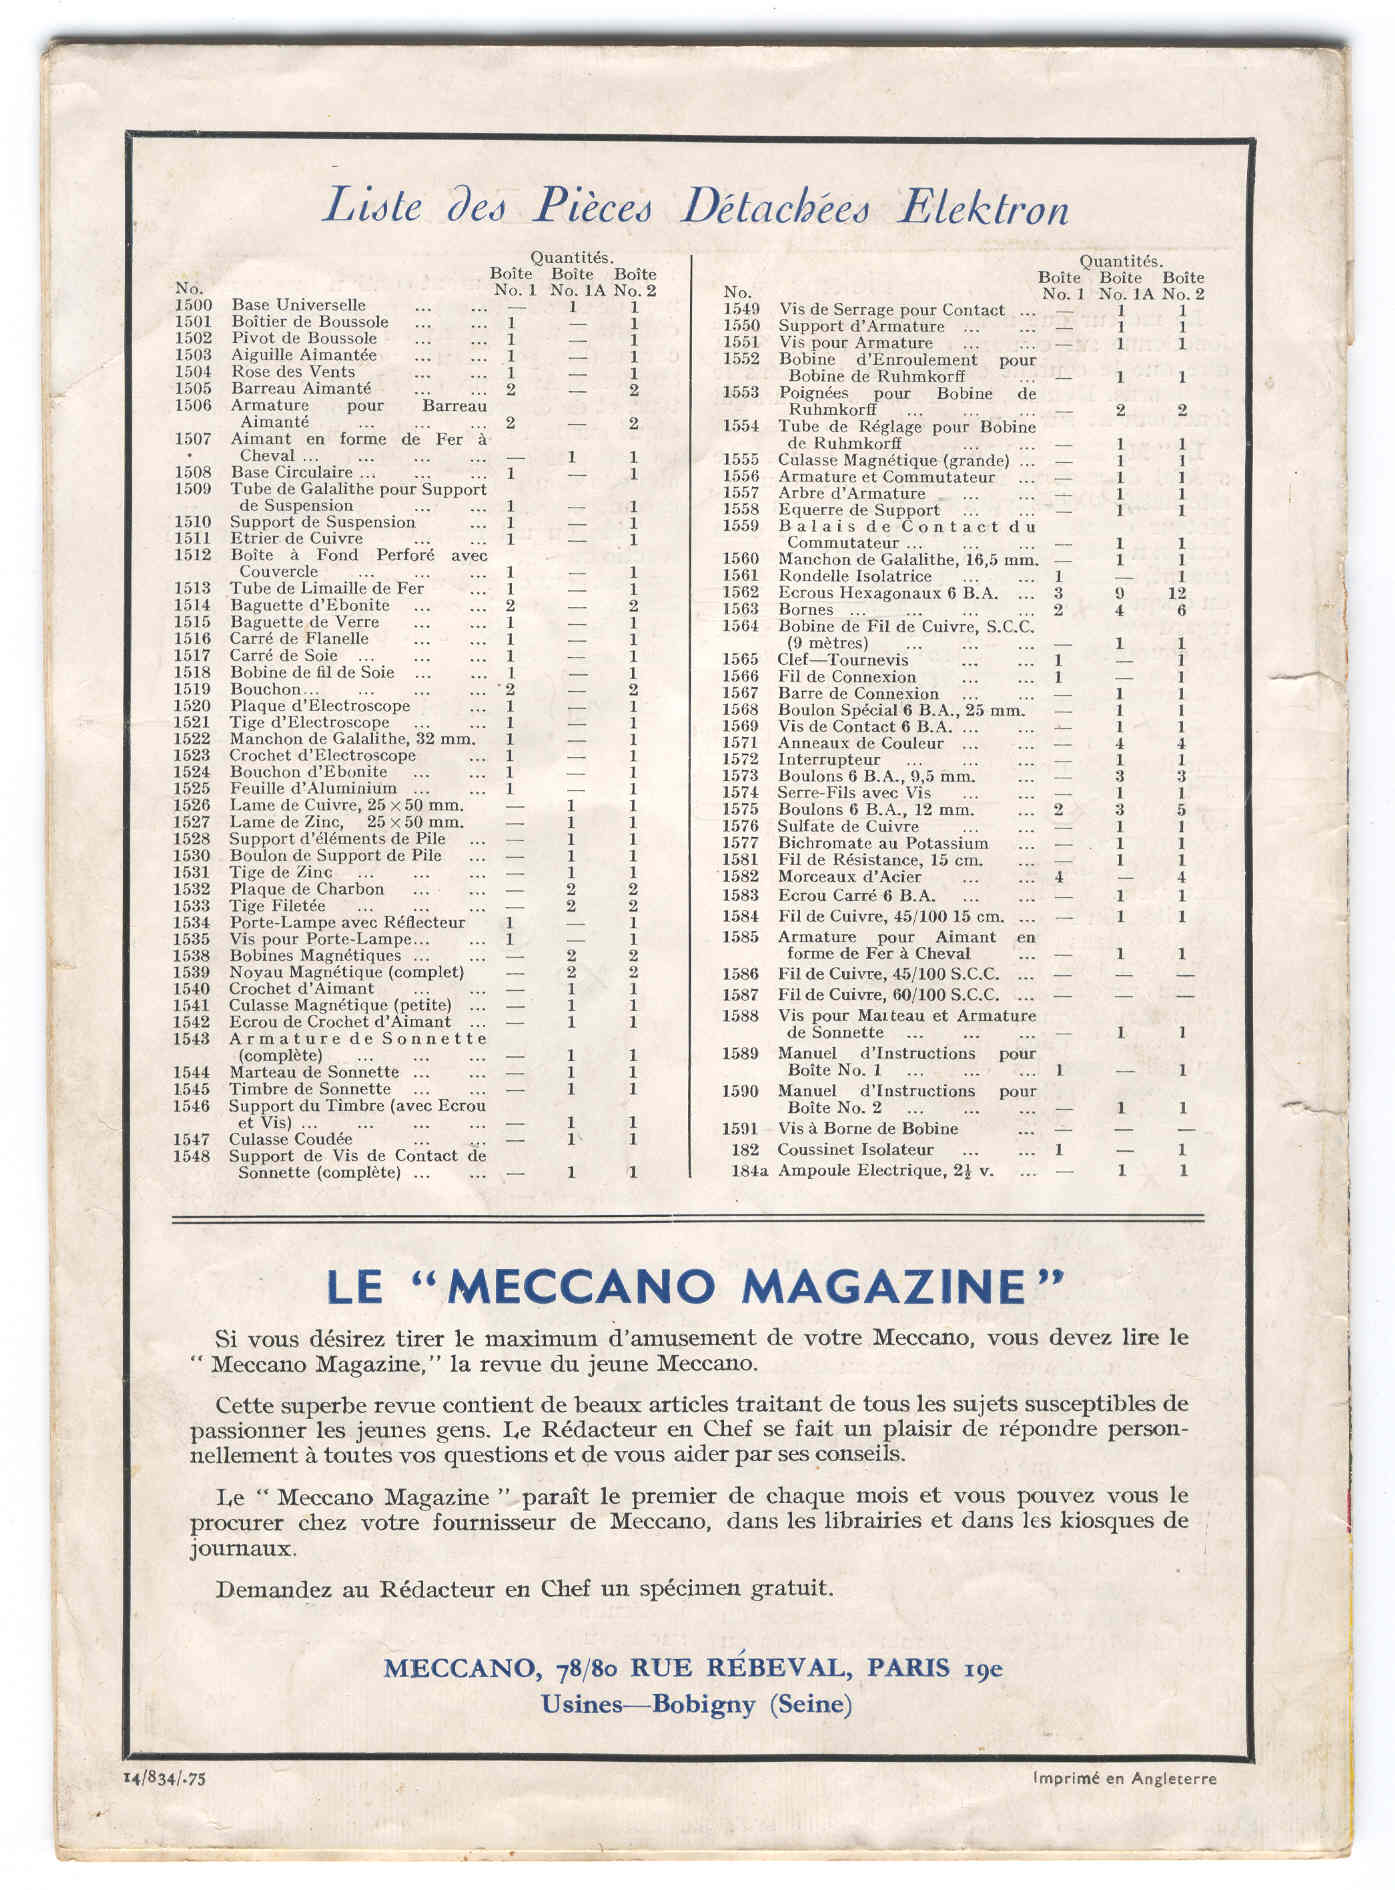 Liste des pièces et contenu des boîtes (août 1934))